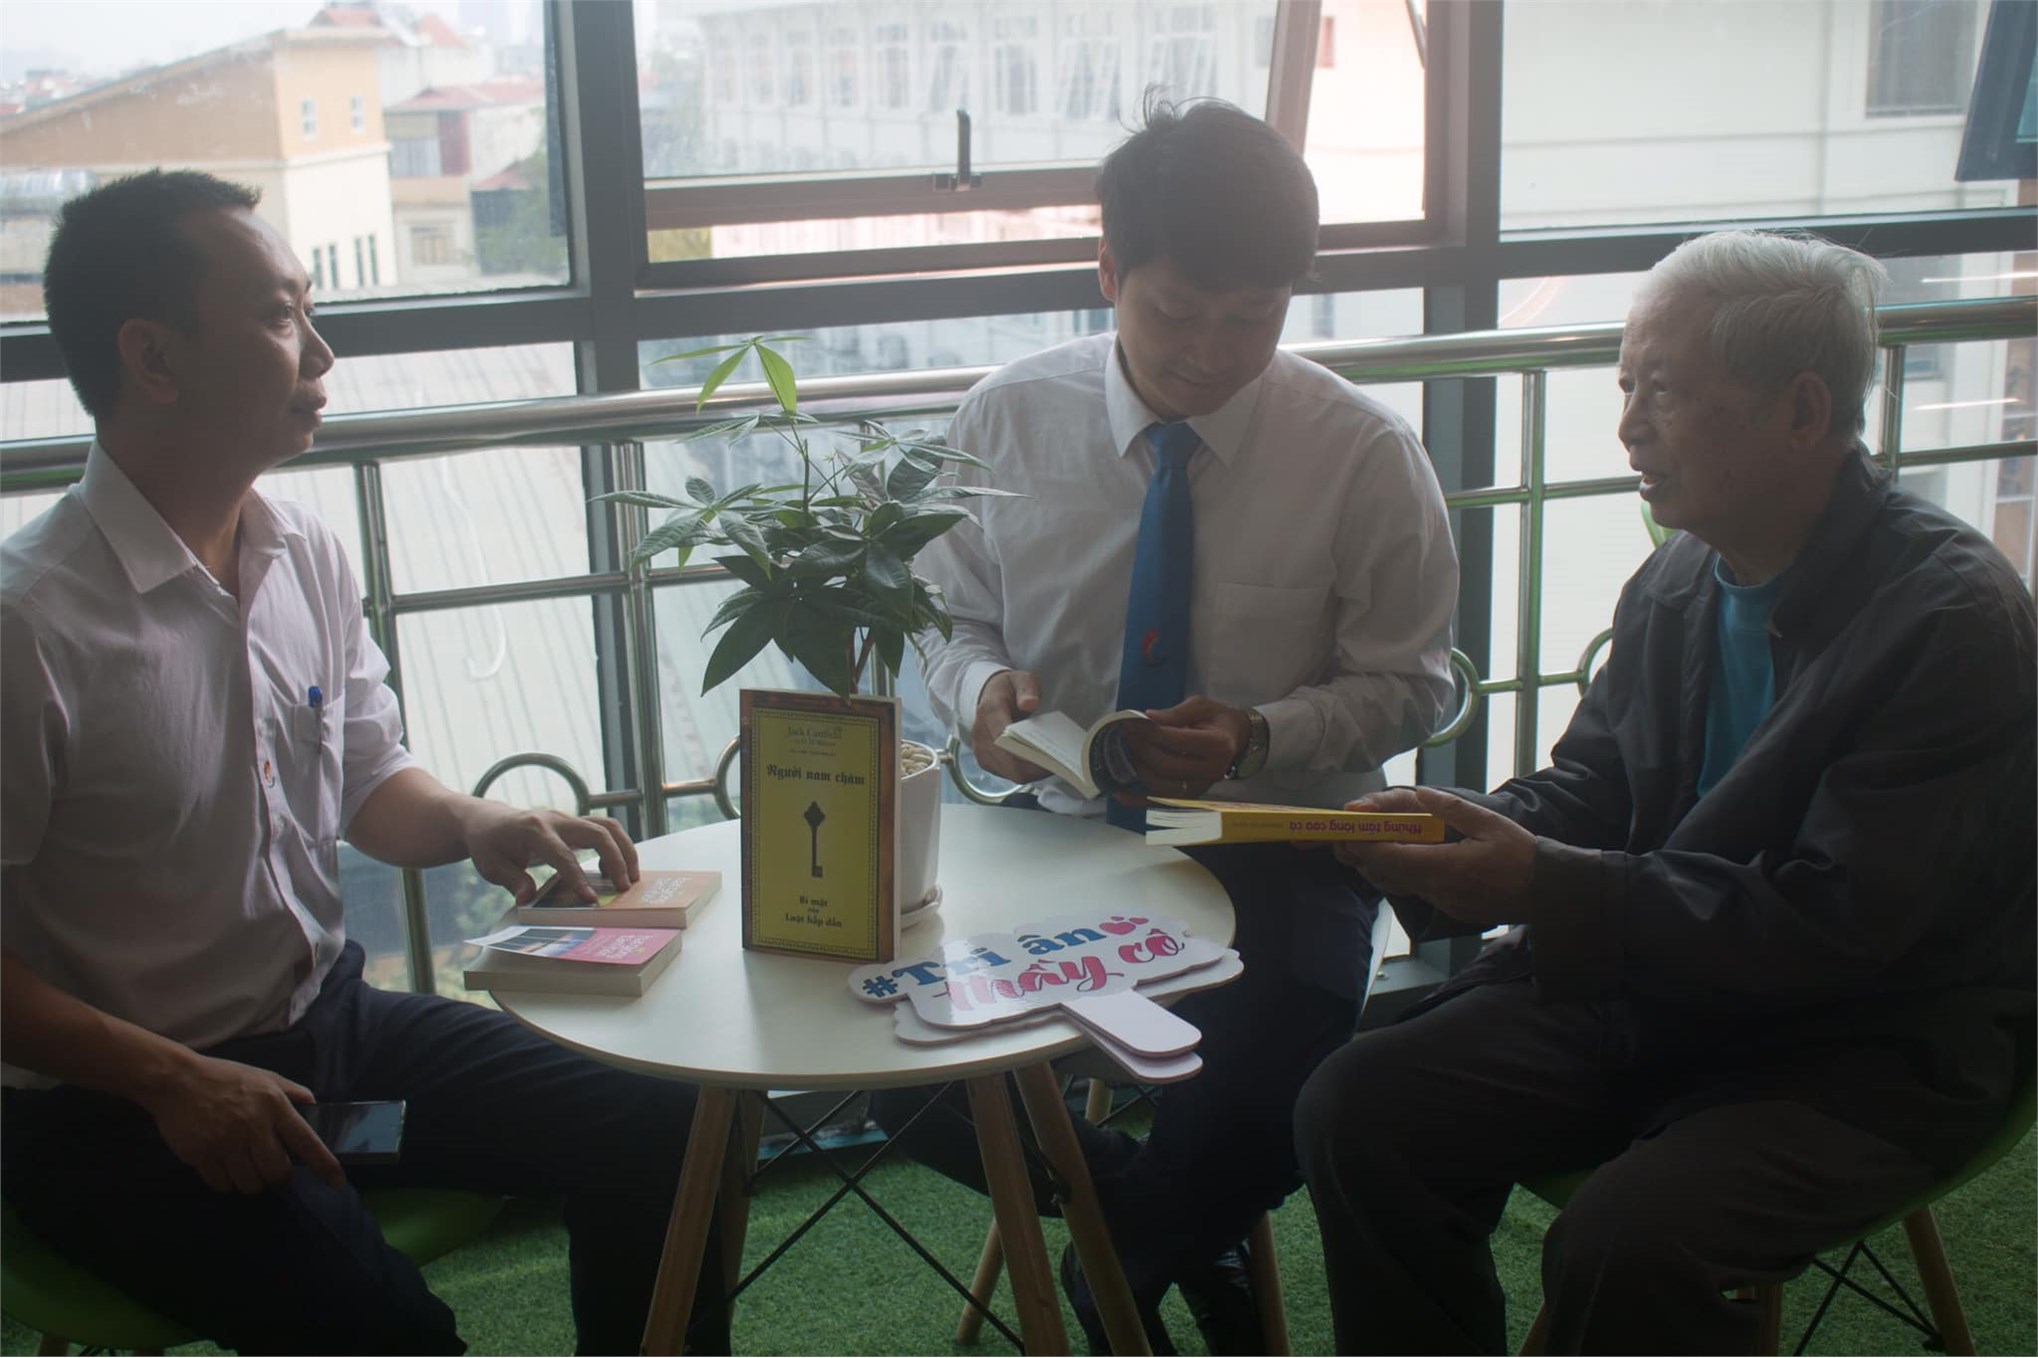 Tri ân Gặp mặt cựu giáo chức Khoa Công nghệ ô tô trước thềm ngày nhà giáo Việt Nam 20-11